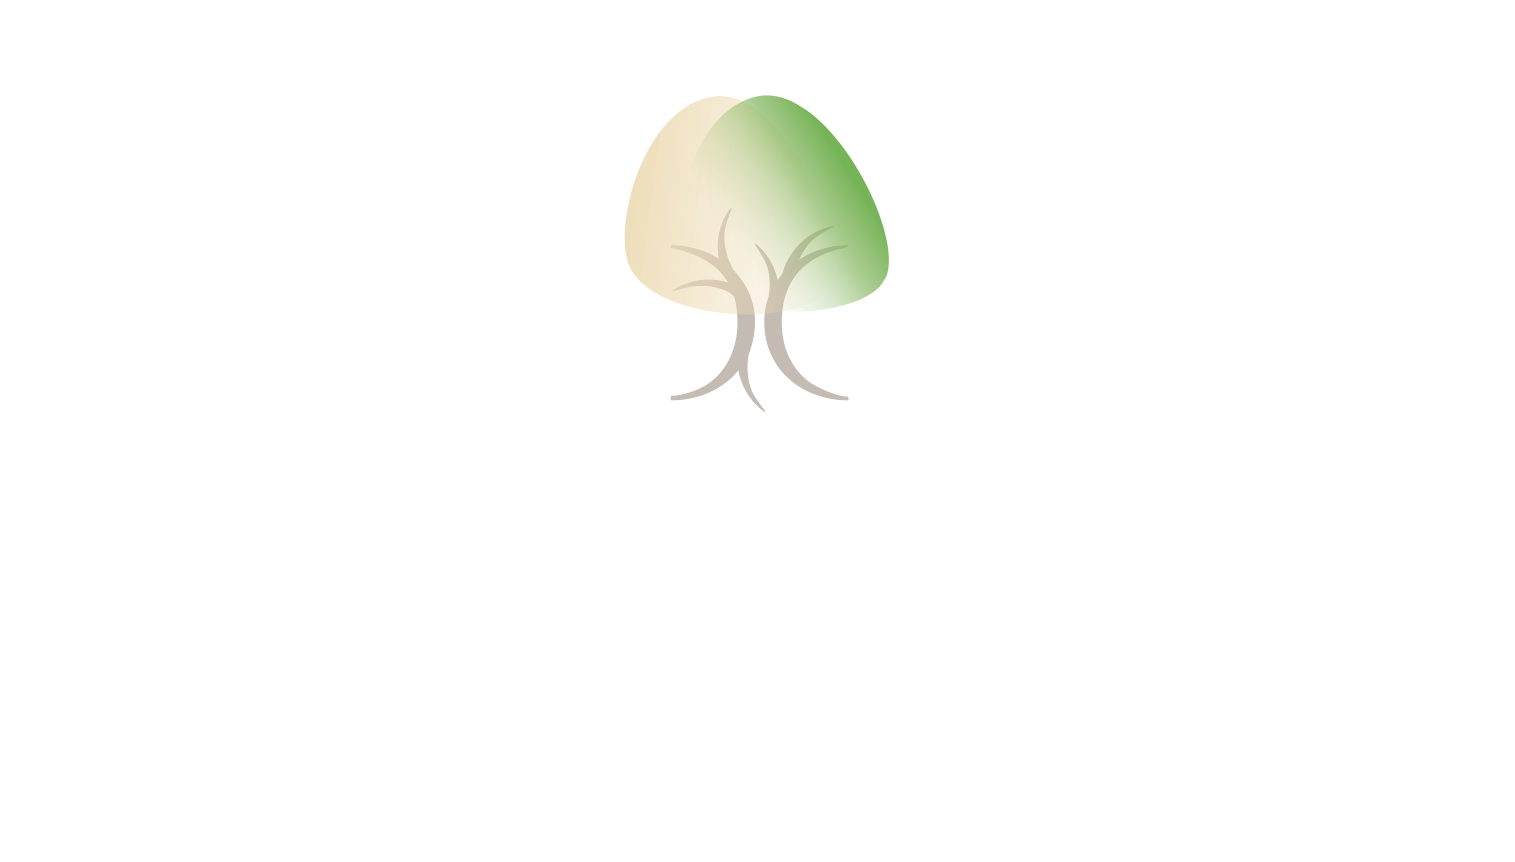 Heilpraktikerin für Psychotherapie in Zehlendorf, Miriam Karoff